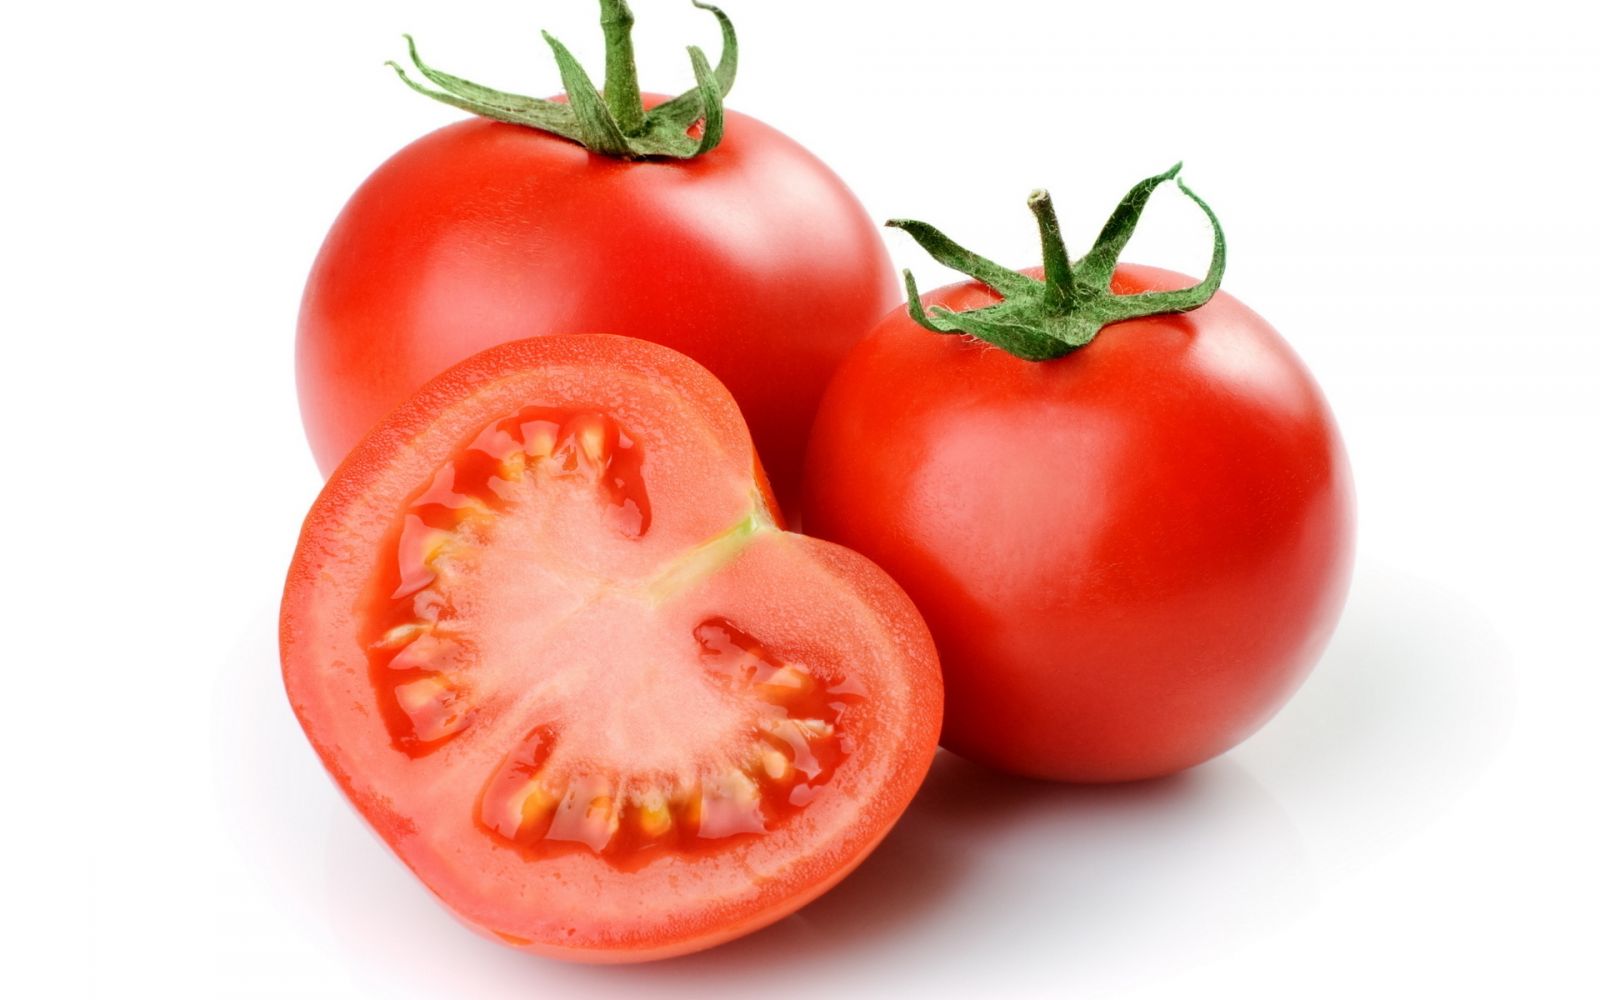 Trong cà chua chứa chất chống oxy hoá mạnh mẽ và được biết đến như thực phẩm ngừa ung thư phổi hiệu quả